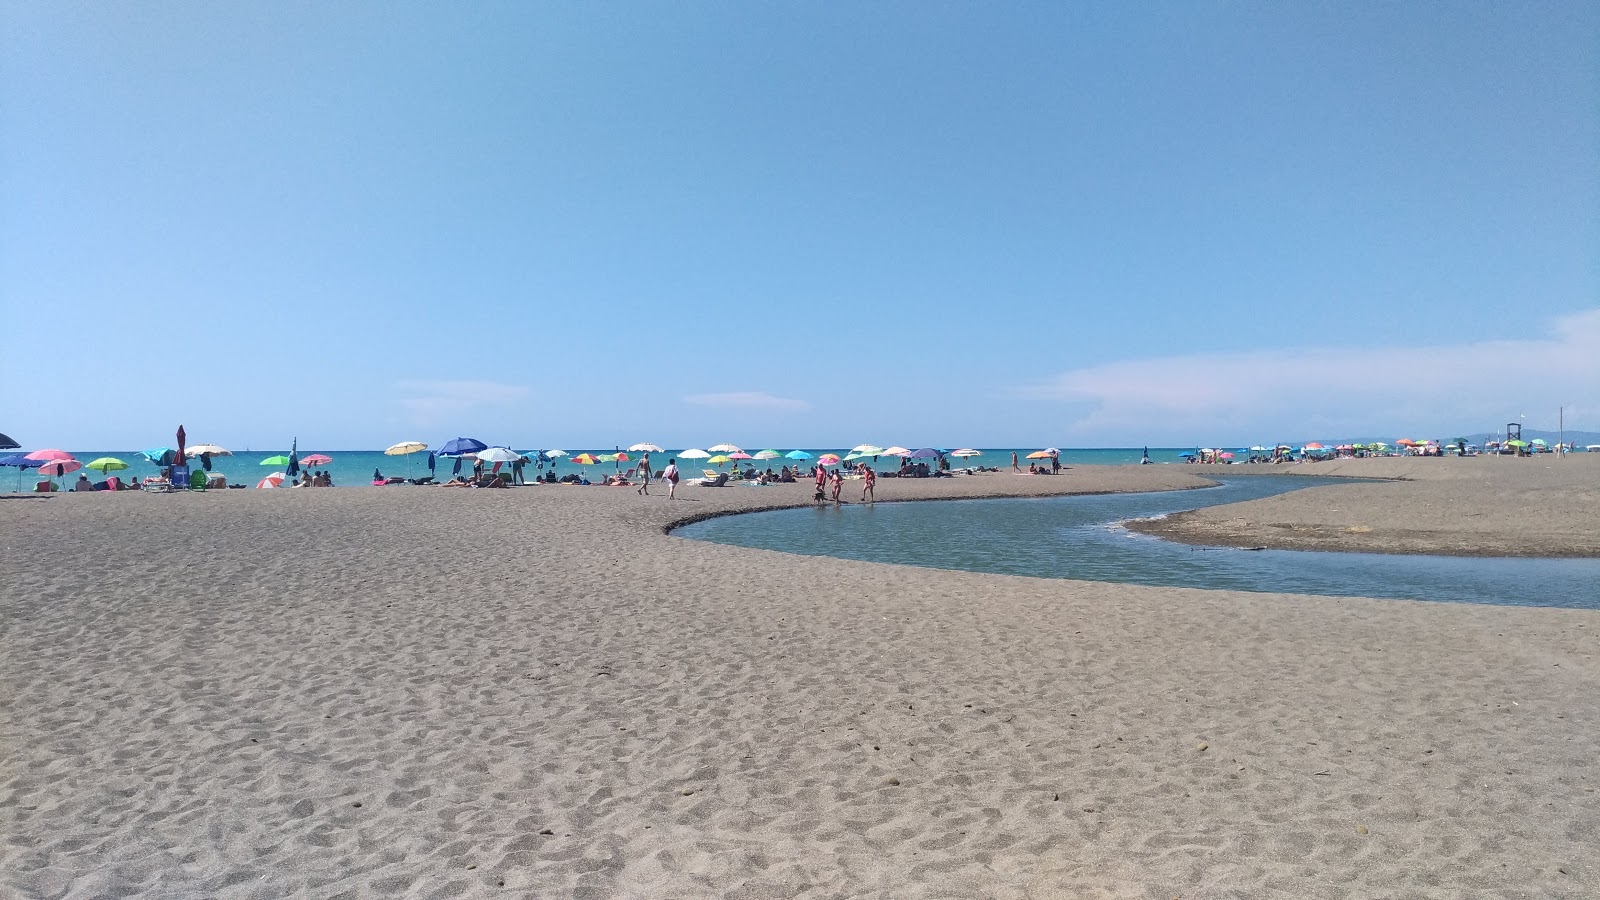 Fotografie cu Etruria beach - locul popular printre cunoscătorii de relaxare